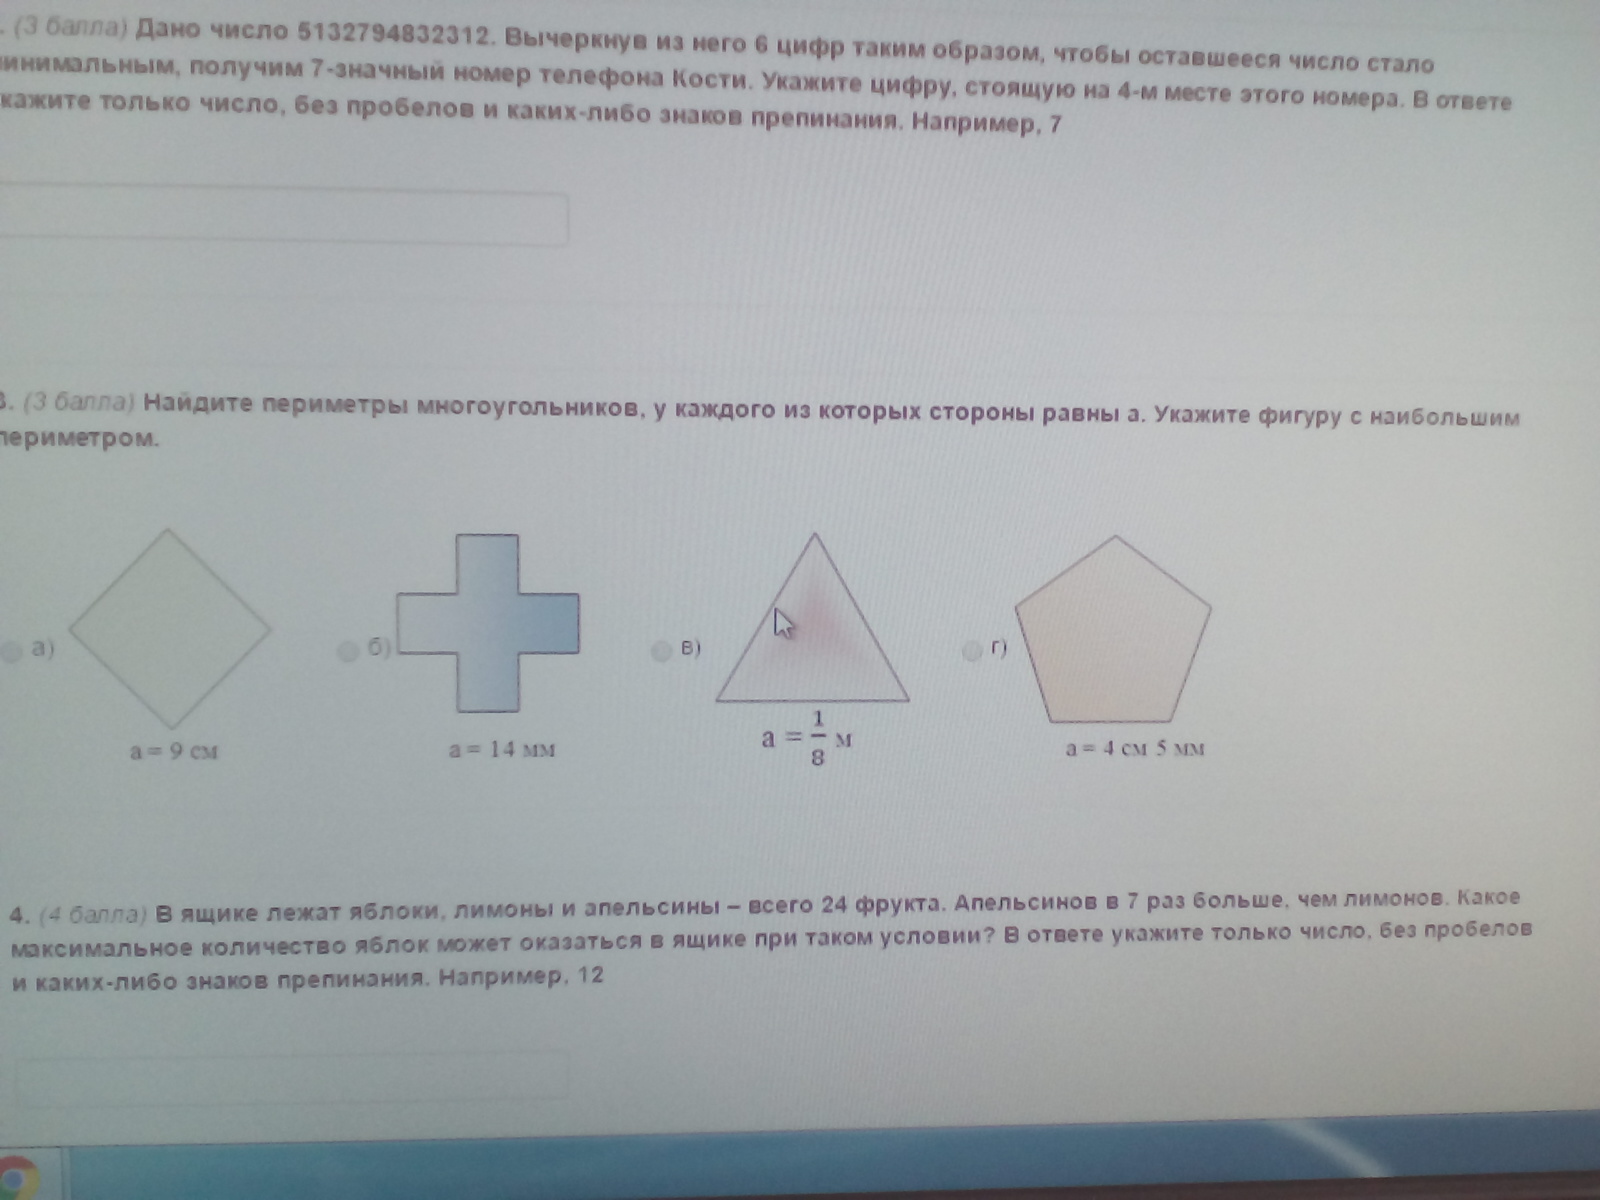 Как найти периметр равного многоугольника